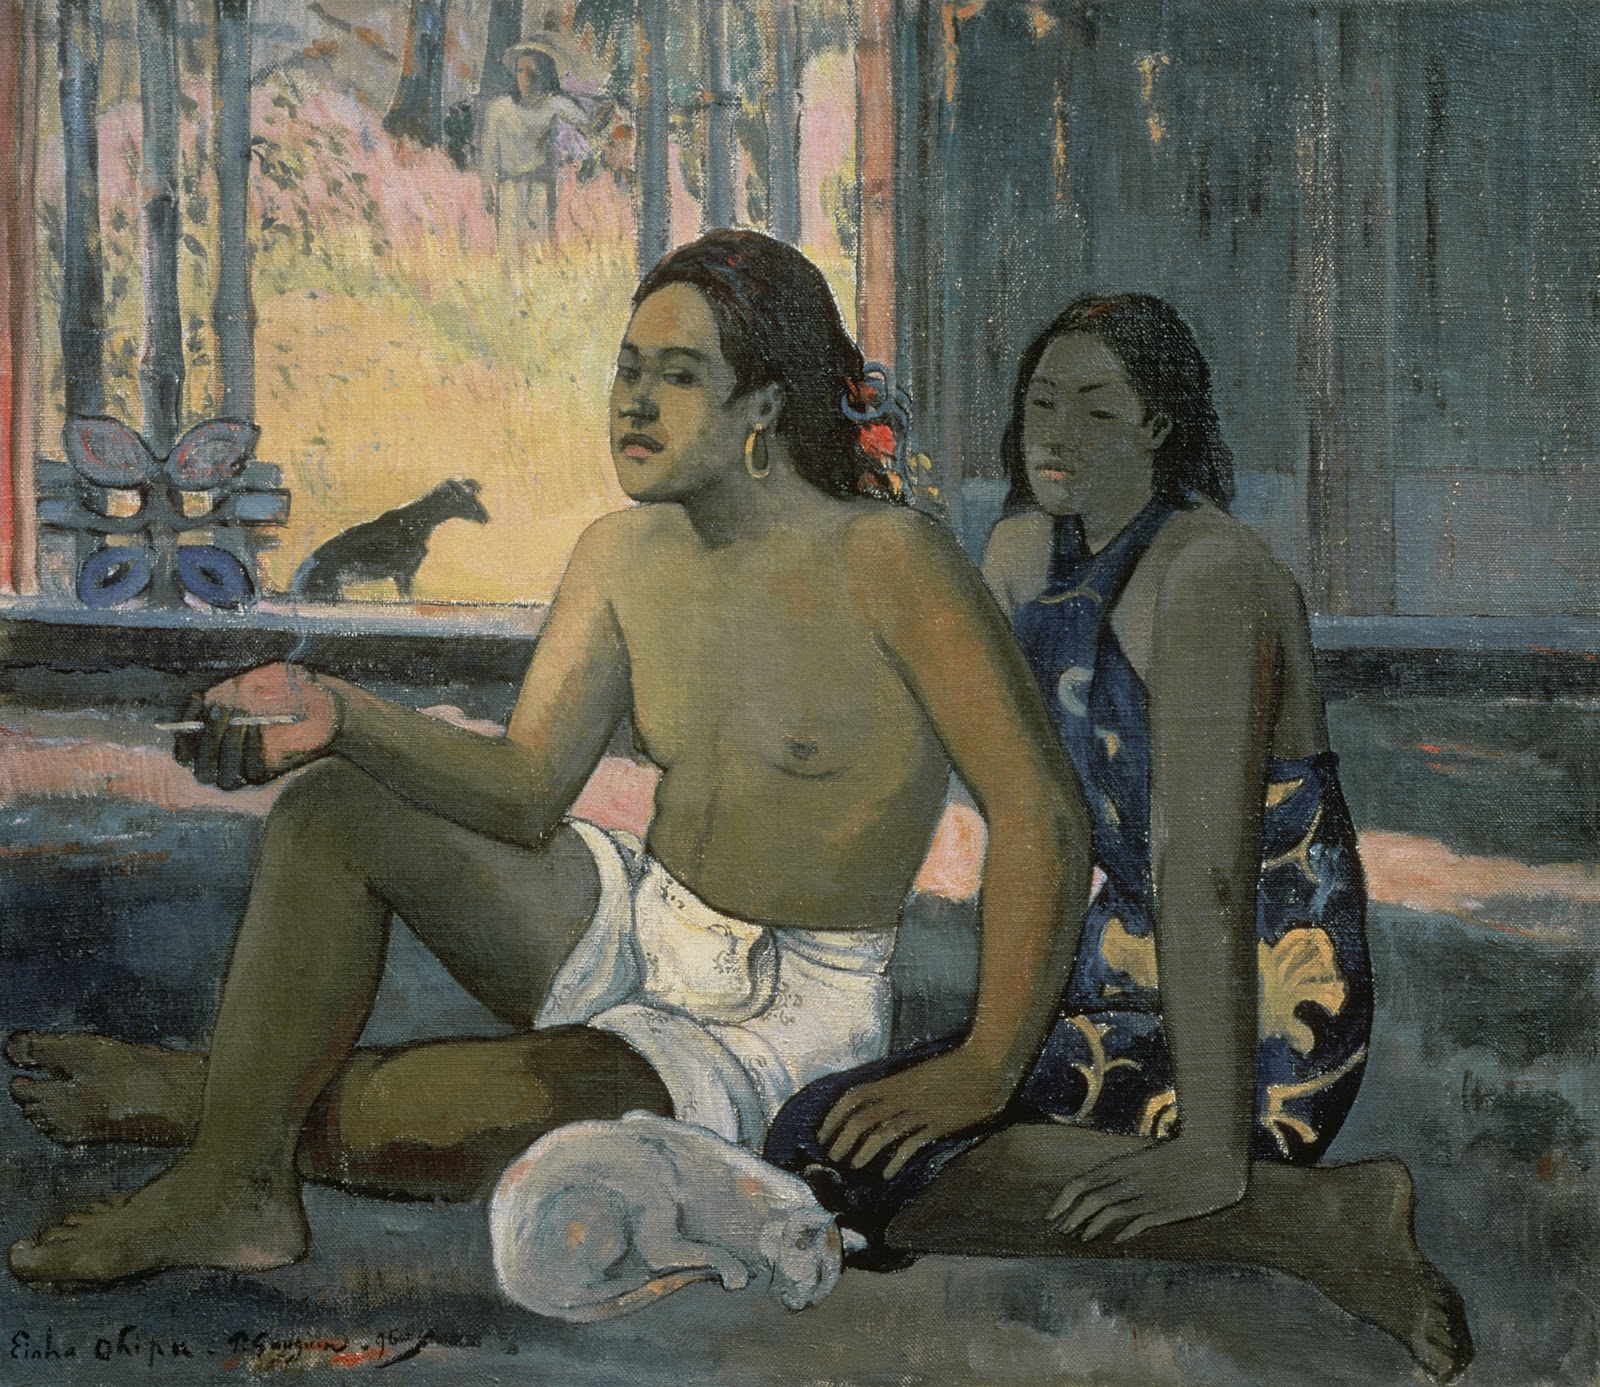 Paul+Gauguin-1848-1903 (462).jpg